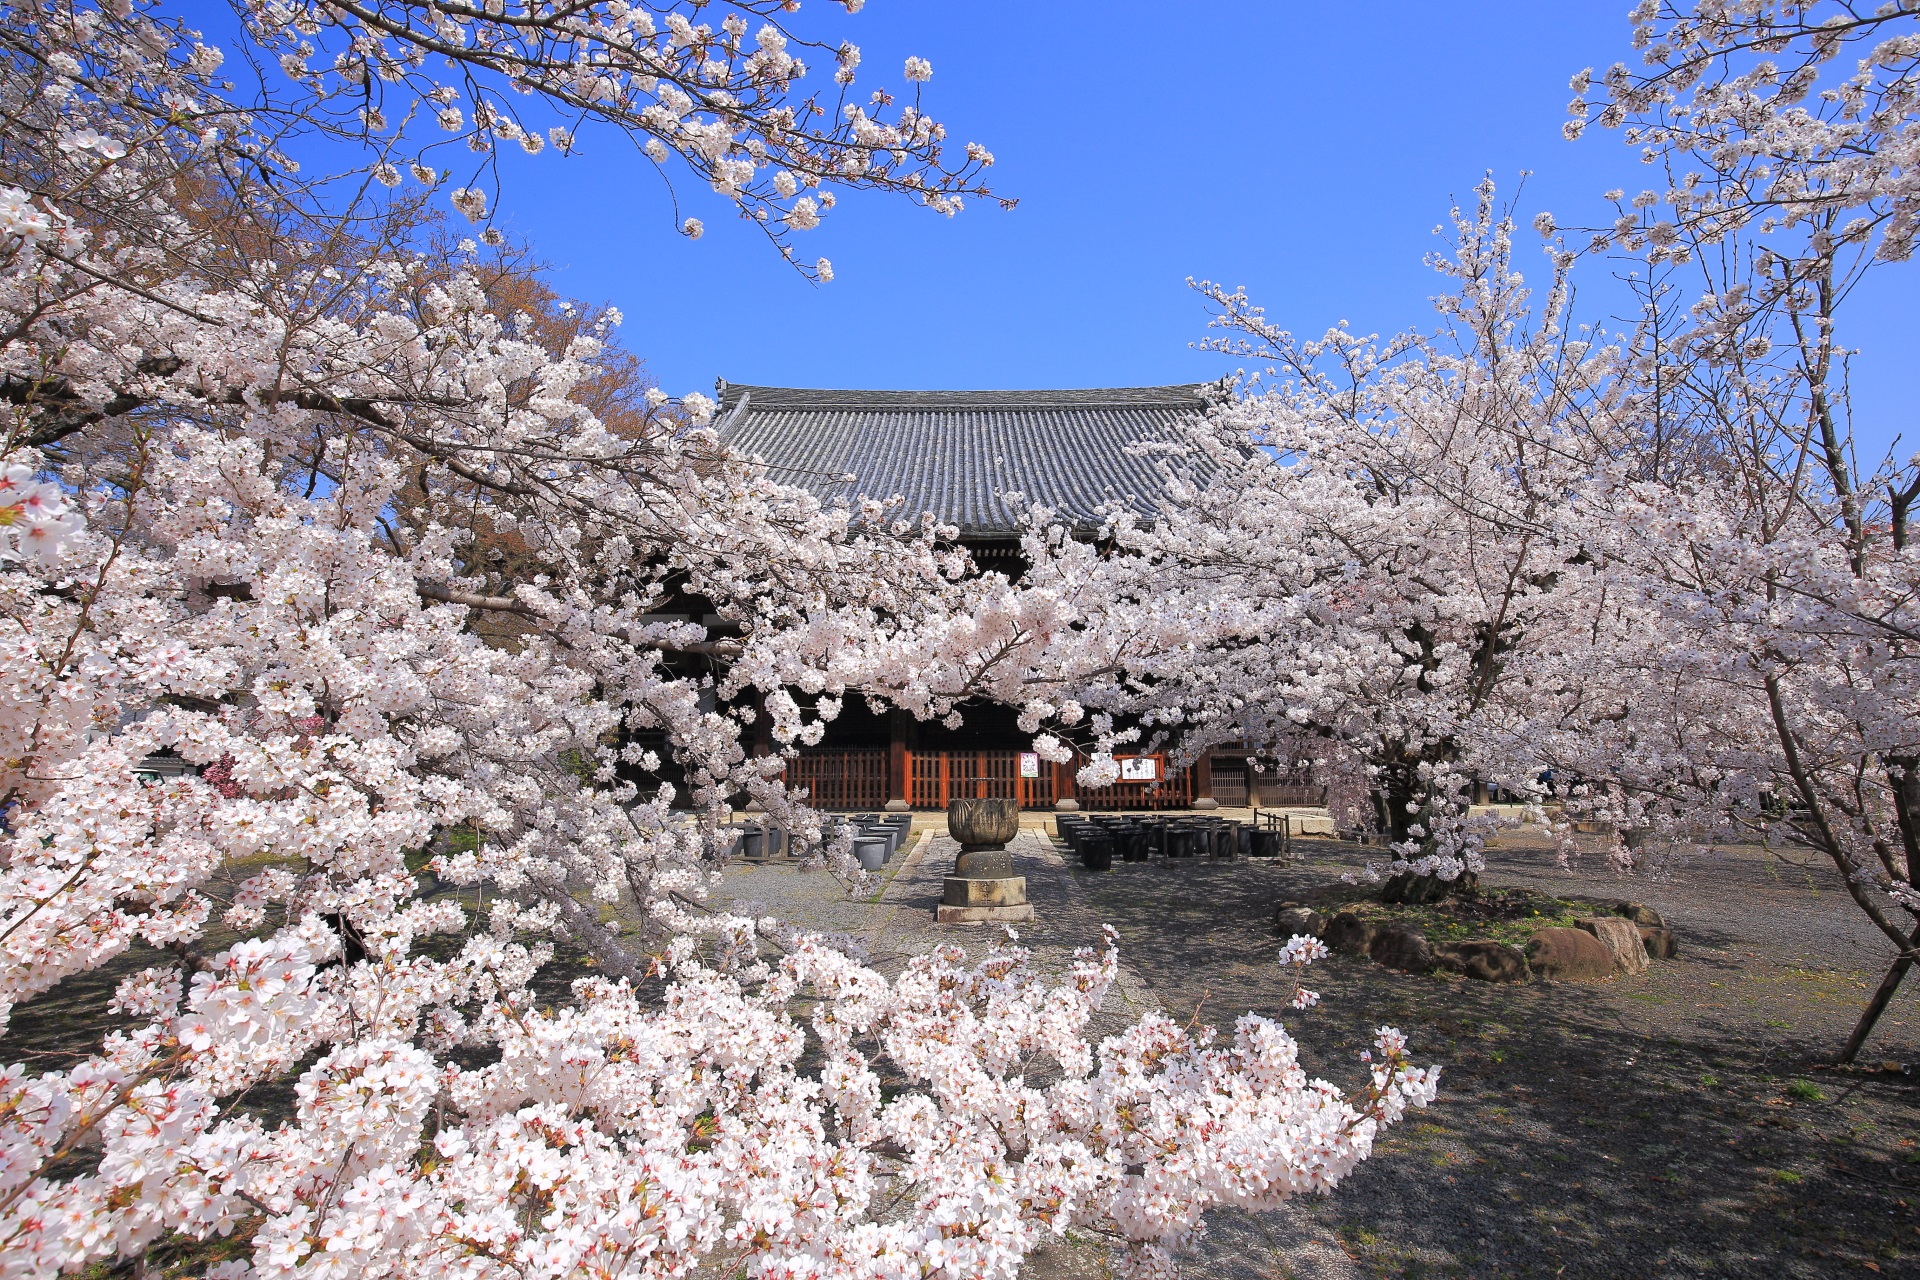 立本寺の弾け飛びそうなくらいに咲き乱れる満開の桜